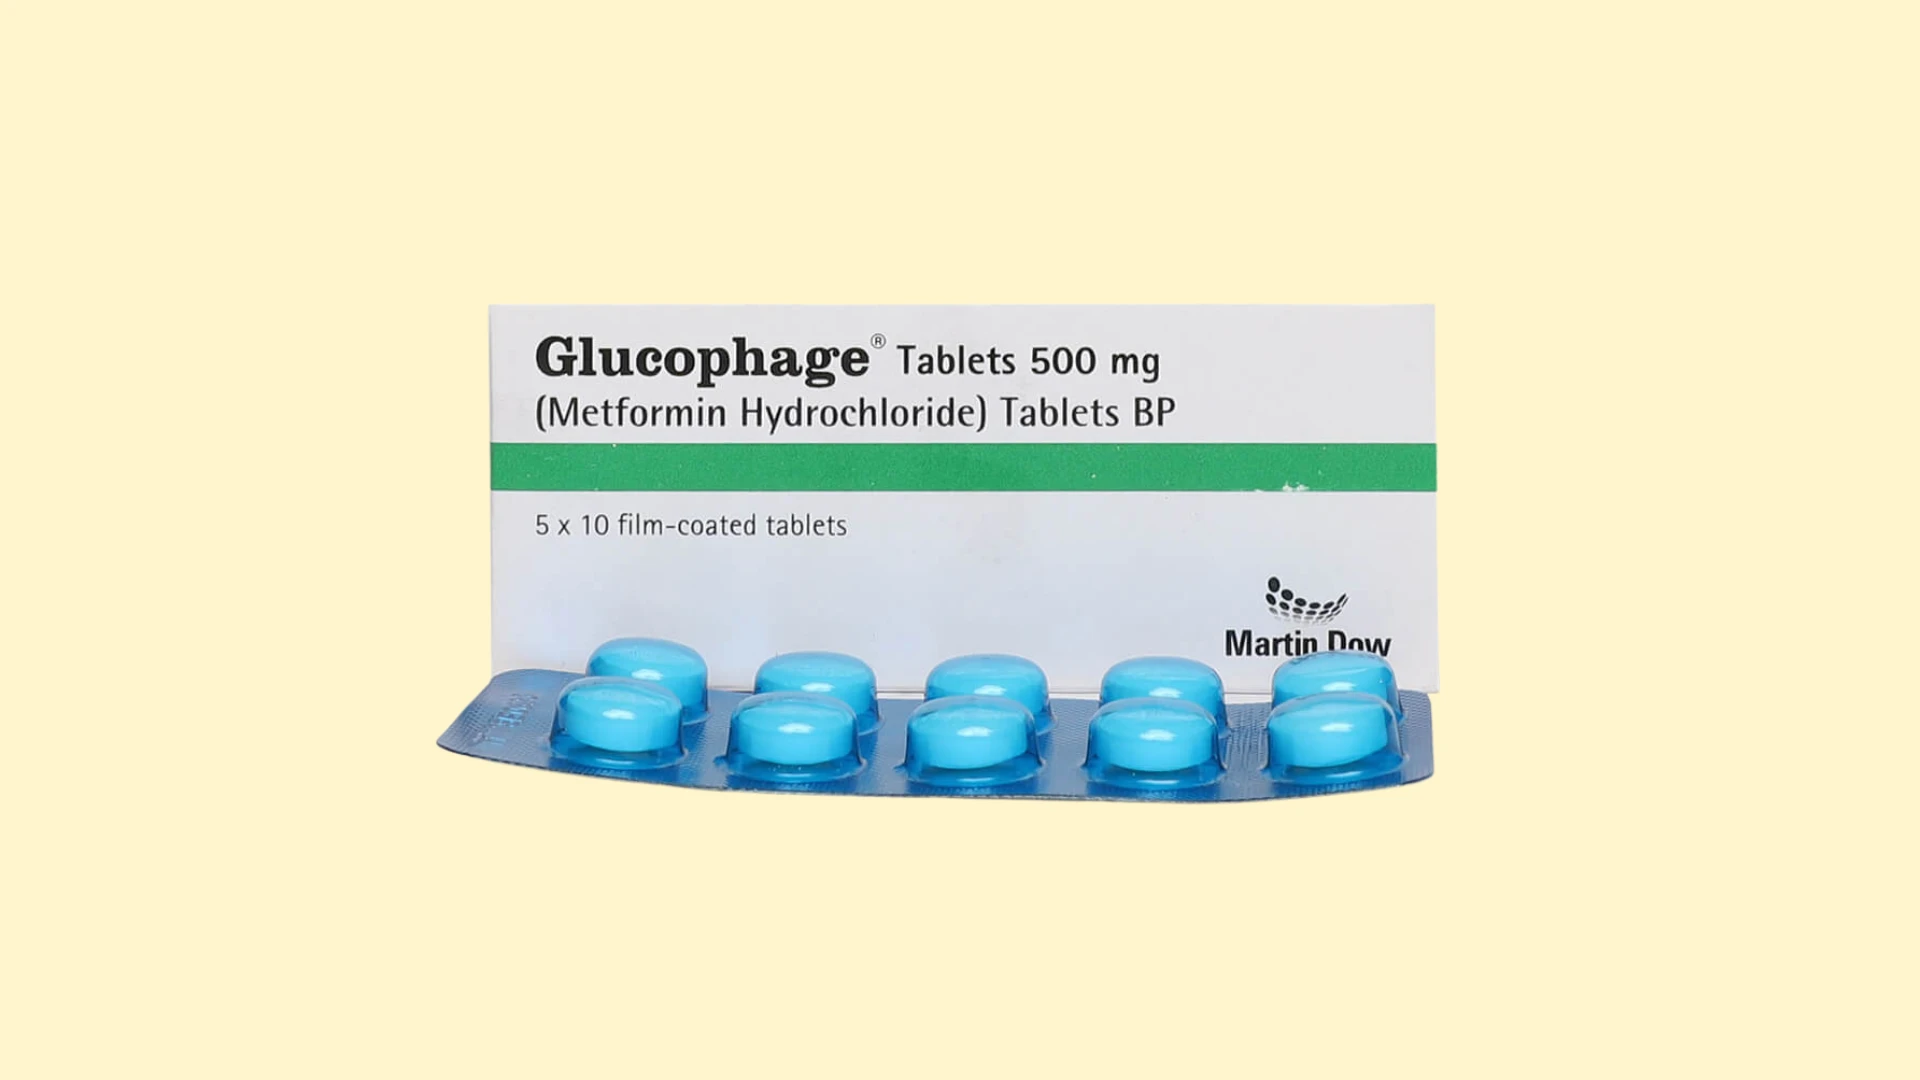 Glucophage 500 mg - Recepta online - e-Recepta z konsultacją | cena, dawkowanie, przeciwwskazania